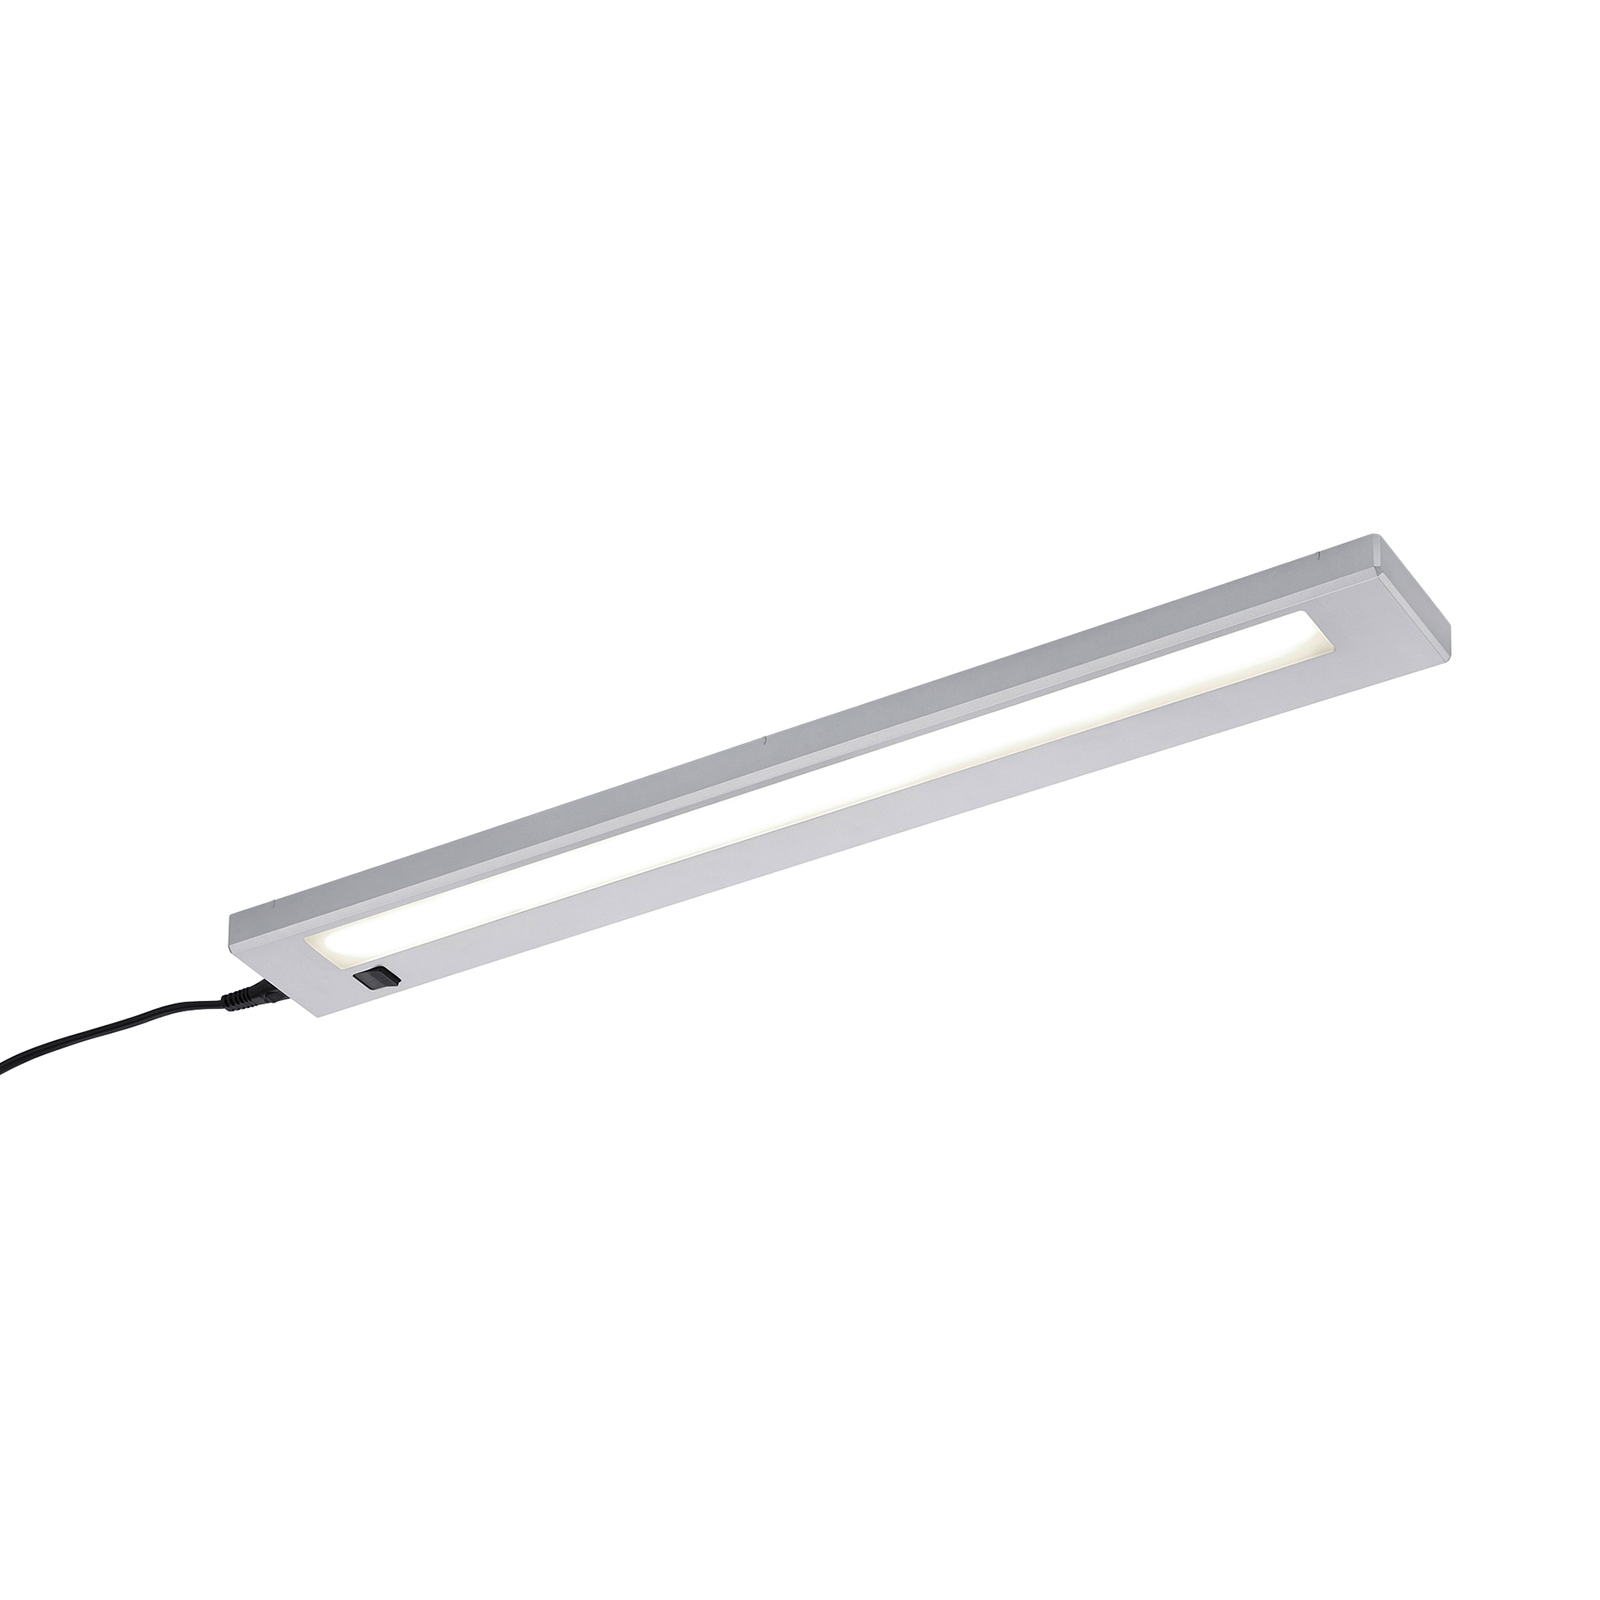 Lampada LED da mobili Alino, titanio, lunga 55 cm